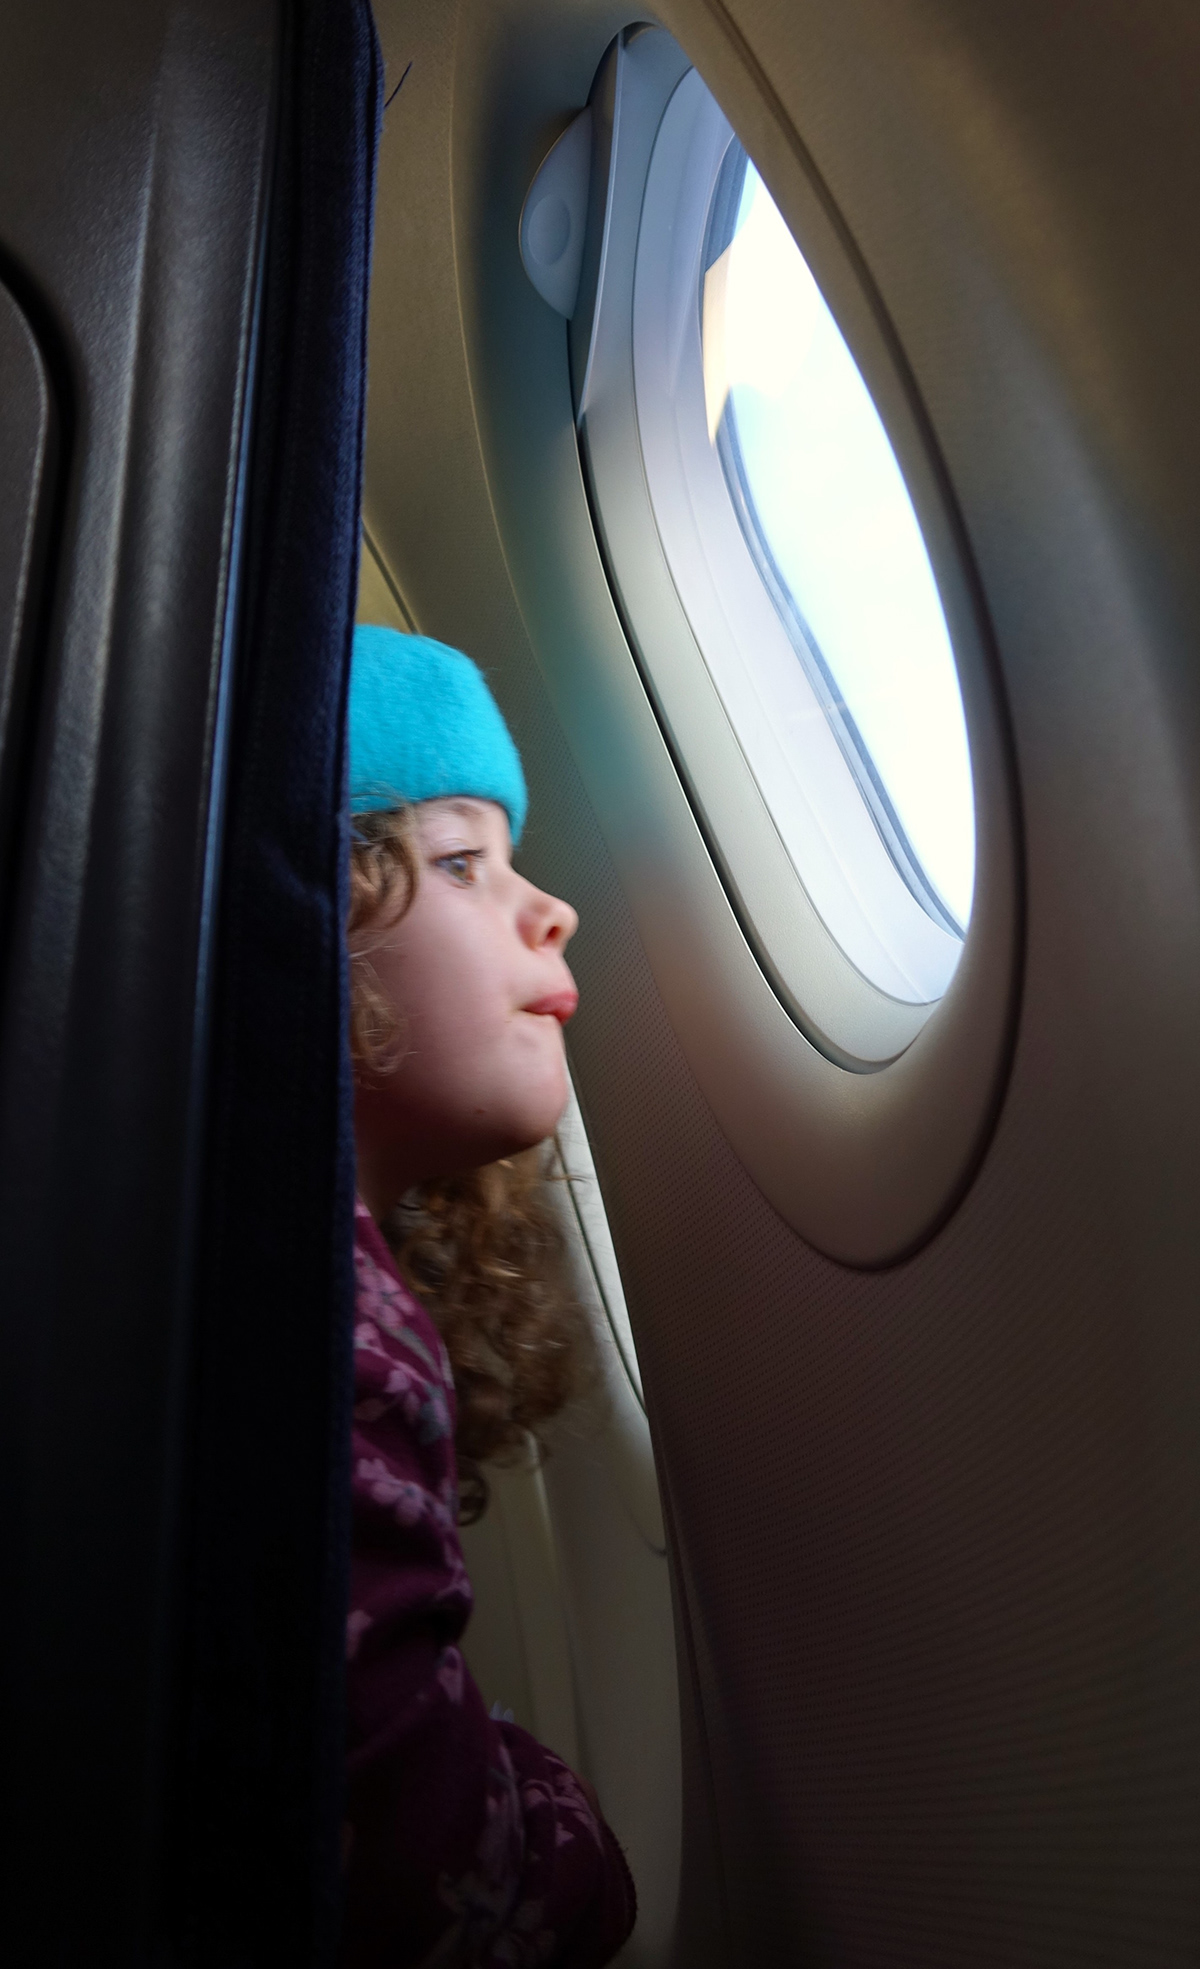 voyage paris avion surprise happy Holiday Famille enfant kids children regards